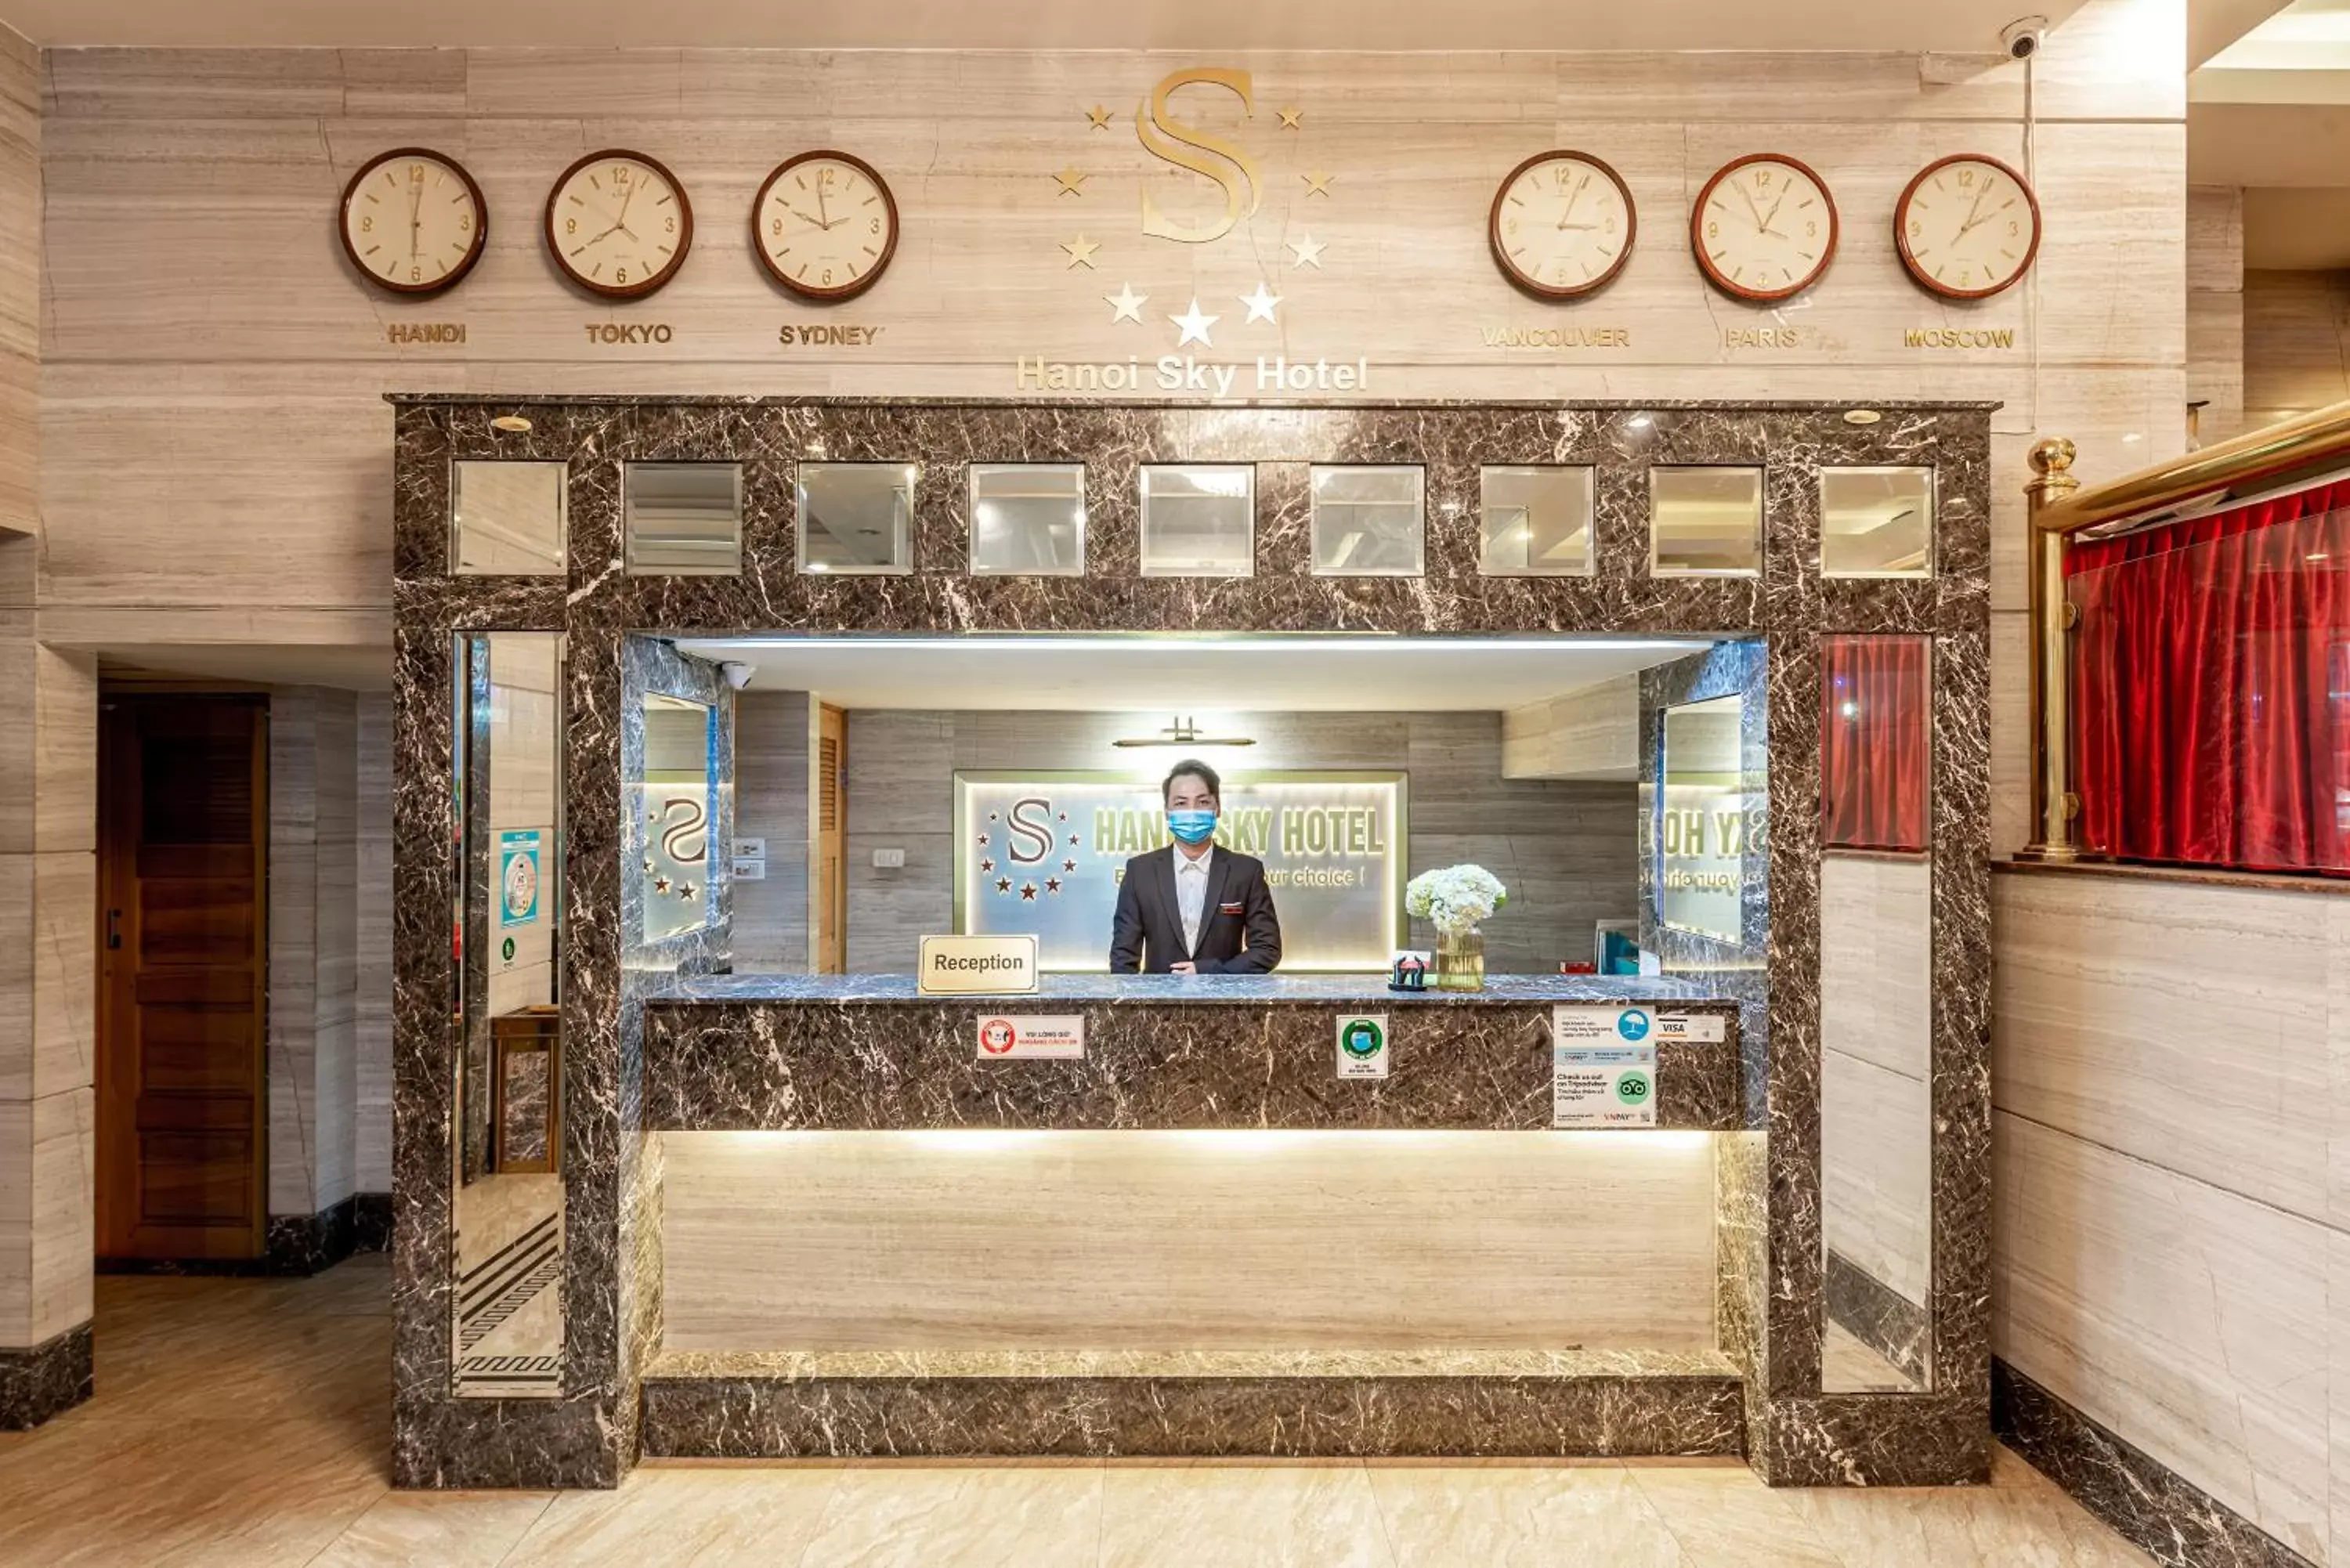 Lobby or reception, Lobby/Reception in Hanoi Sky Hotel